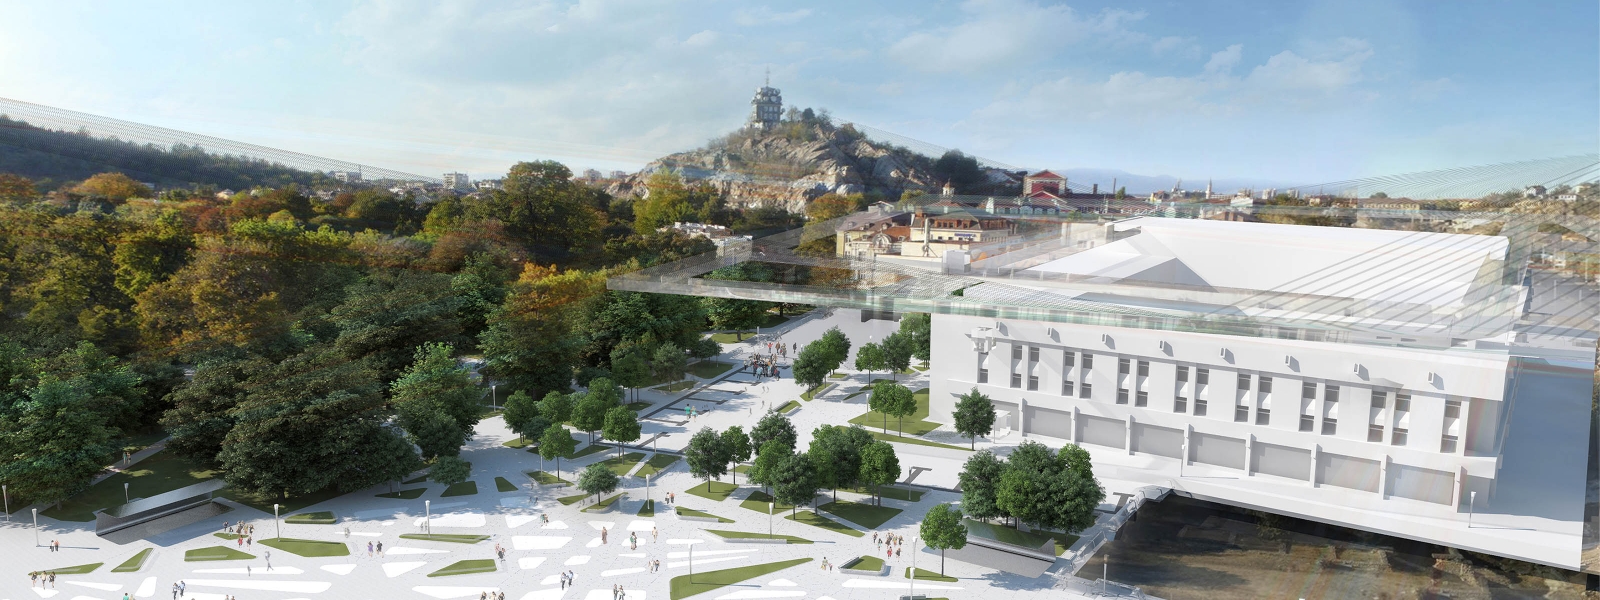 work-Концепция реконструкции центральной площади Пловдива, Болгария